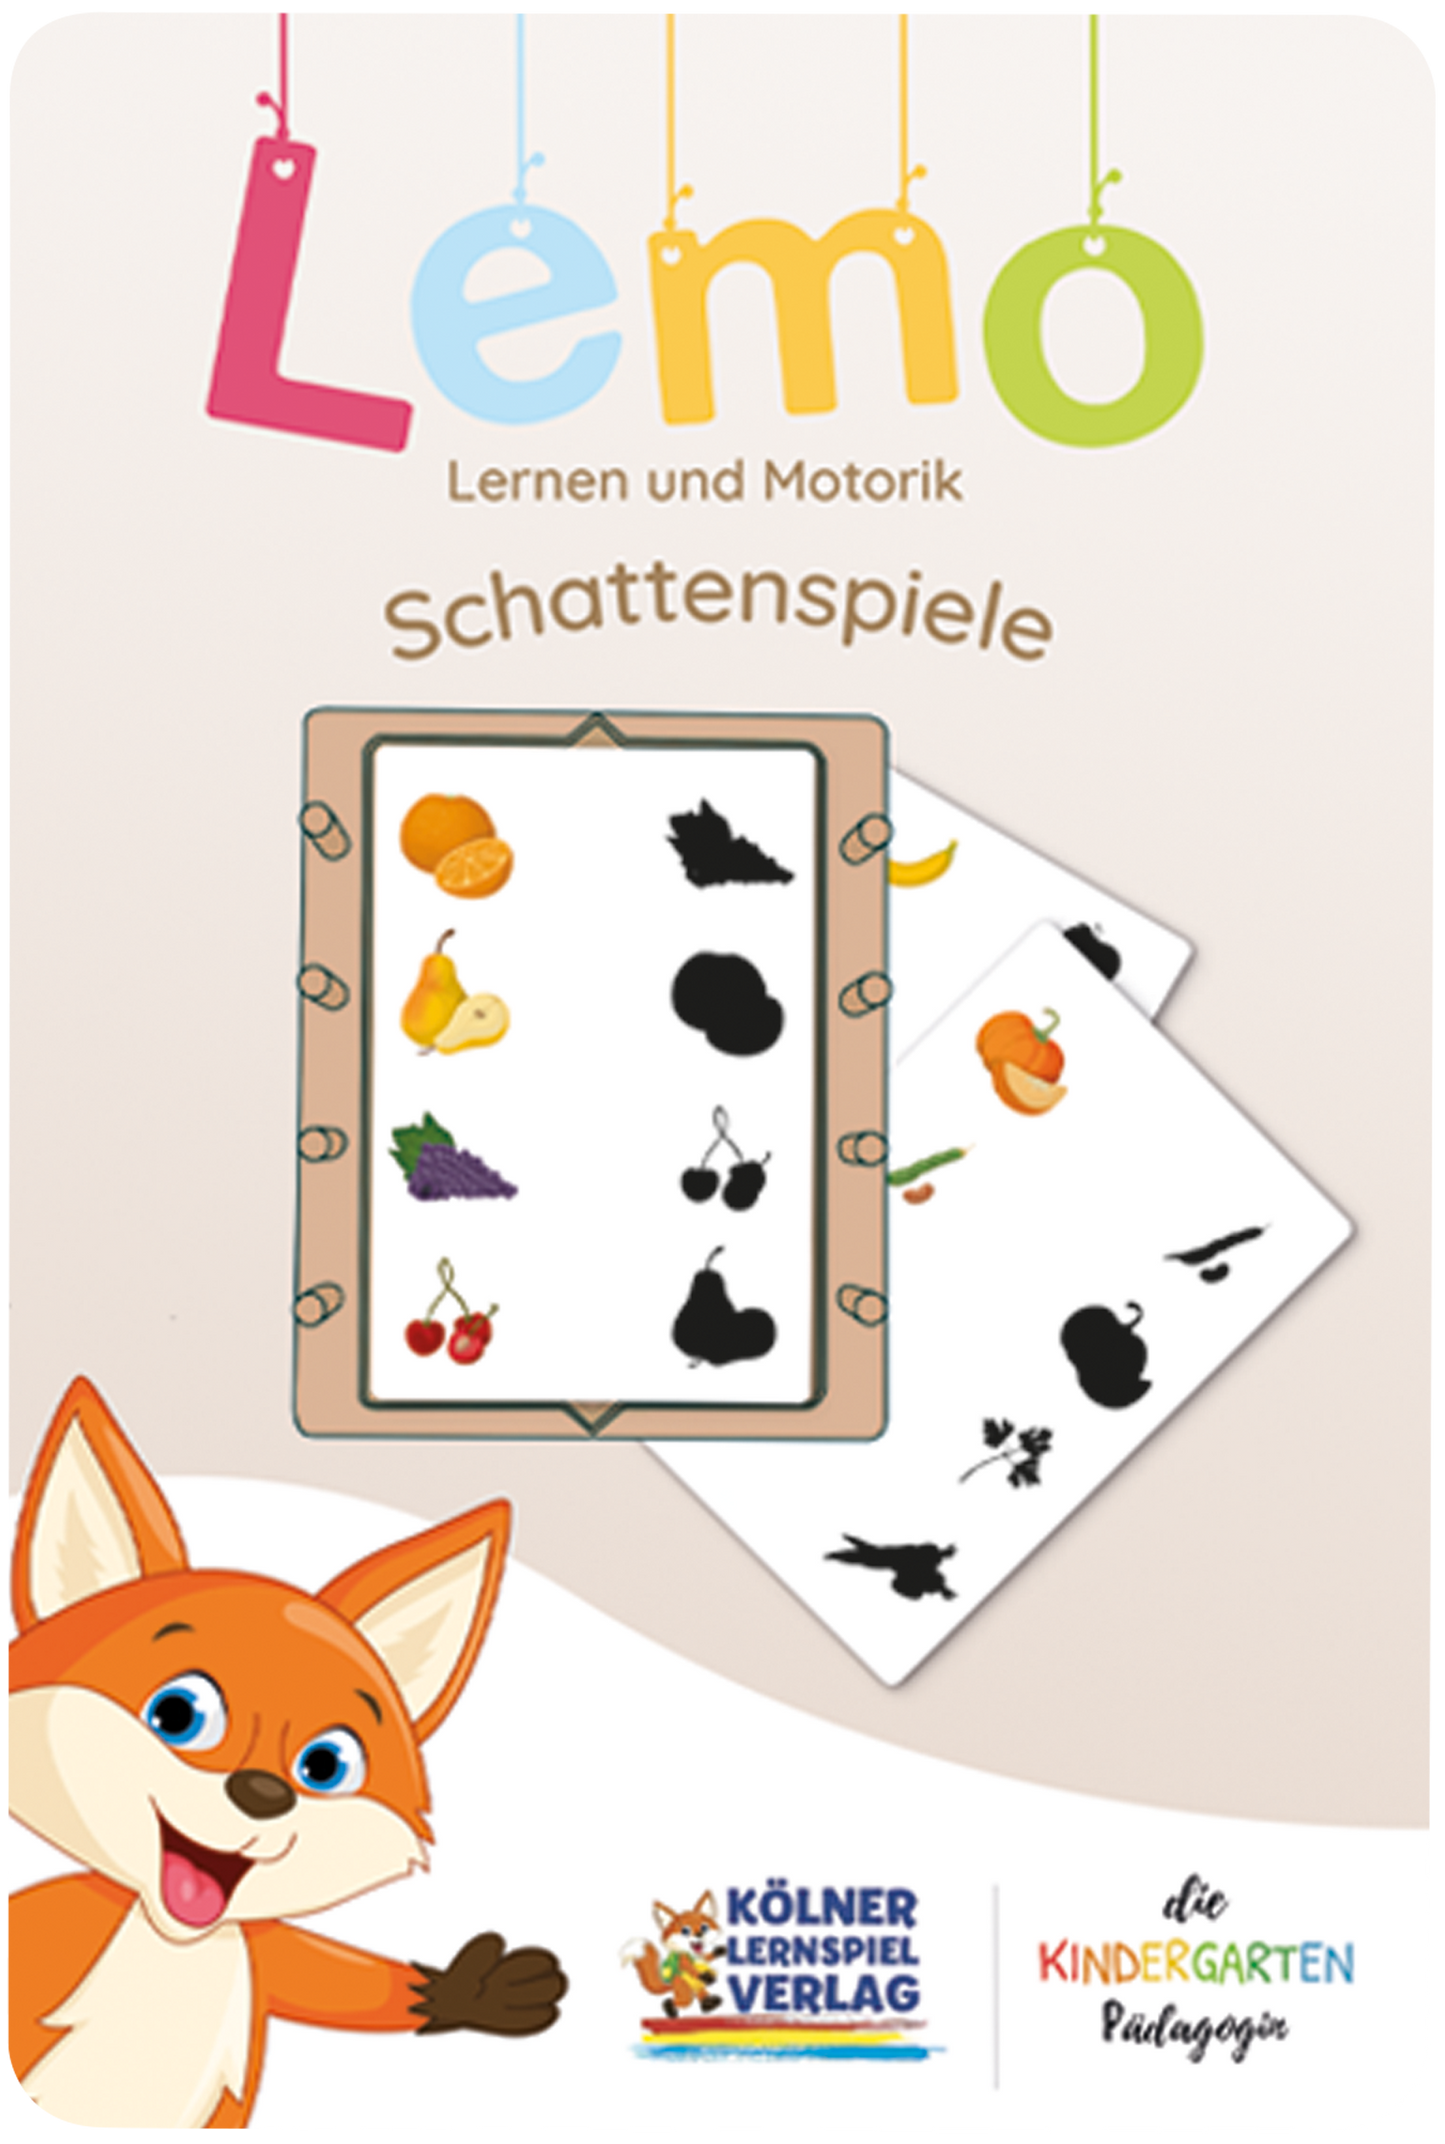 Lemo Kartensatz Schattenspiele (ab 3 Jahren)